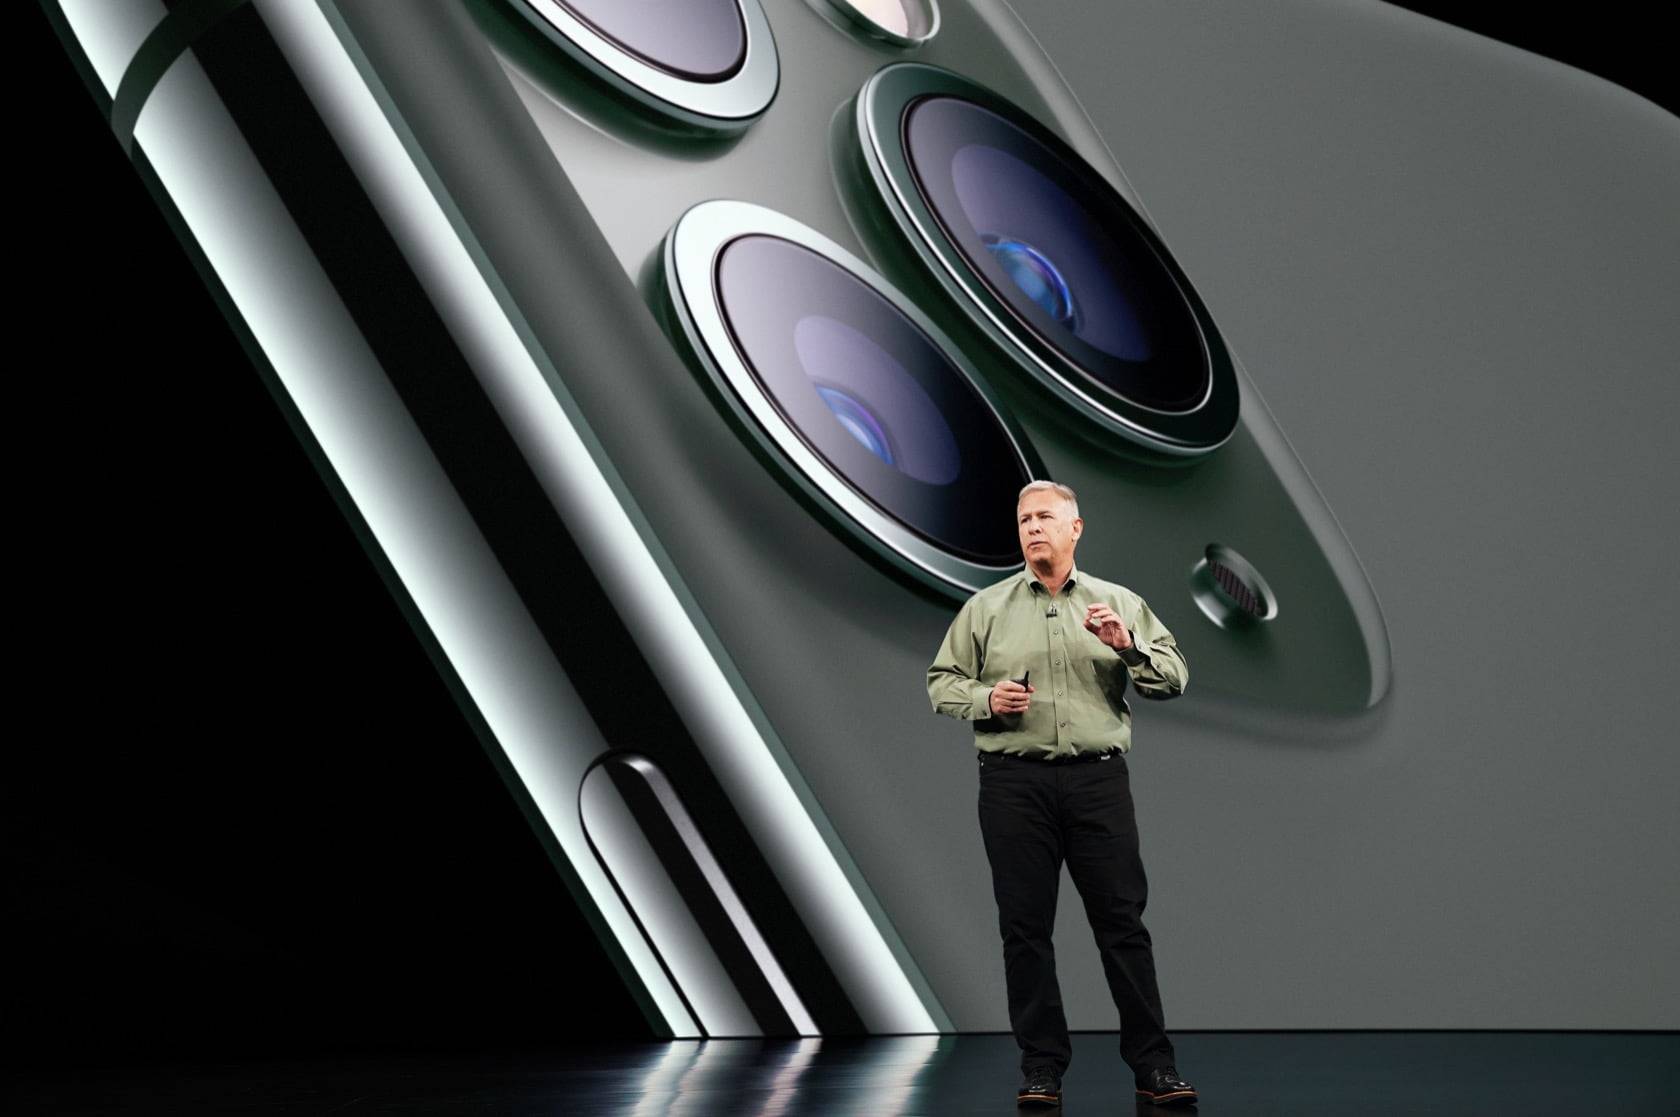 Apple Keynote Event Phil Schiller iPhone 11 Pro 091019 - Perché non utilizzare una fotocamera per la fotografia computazionale che migliora notevolmente le capacità della fotocamera dell’iPhone?